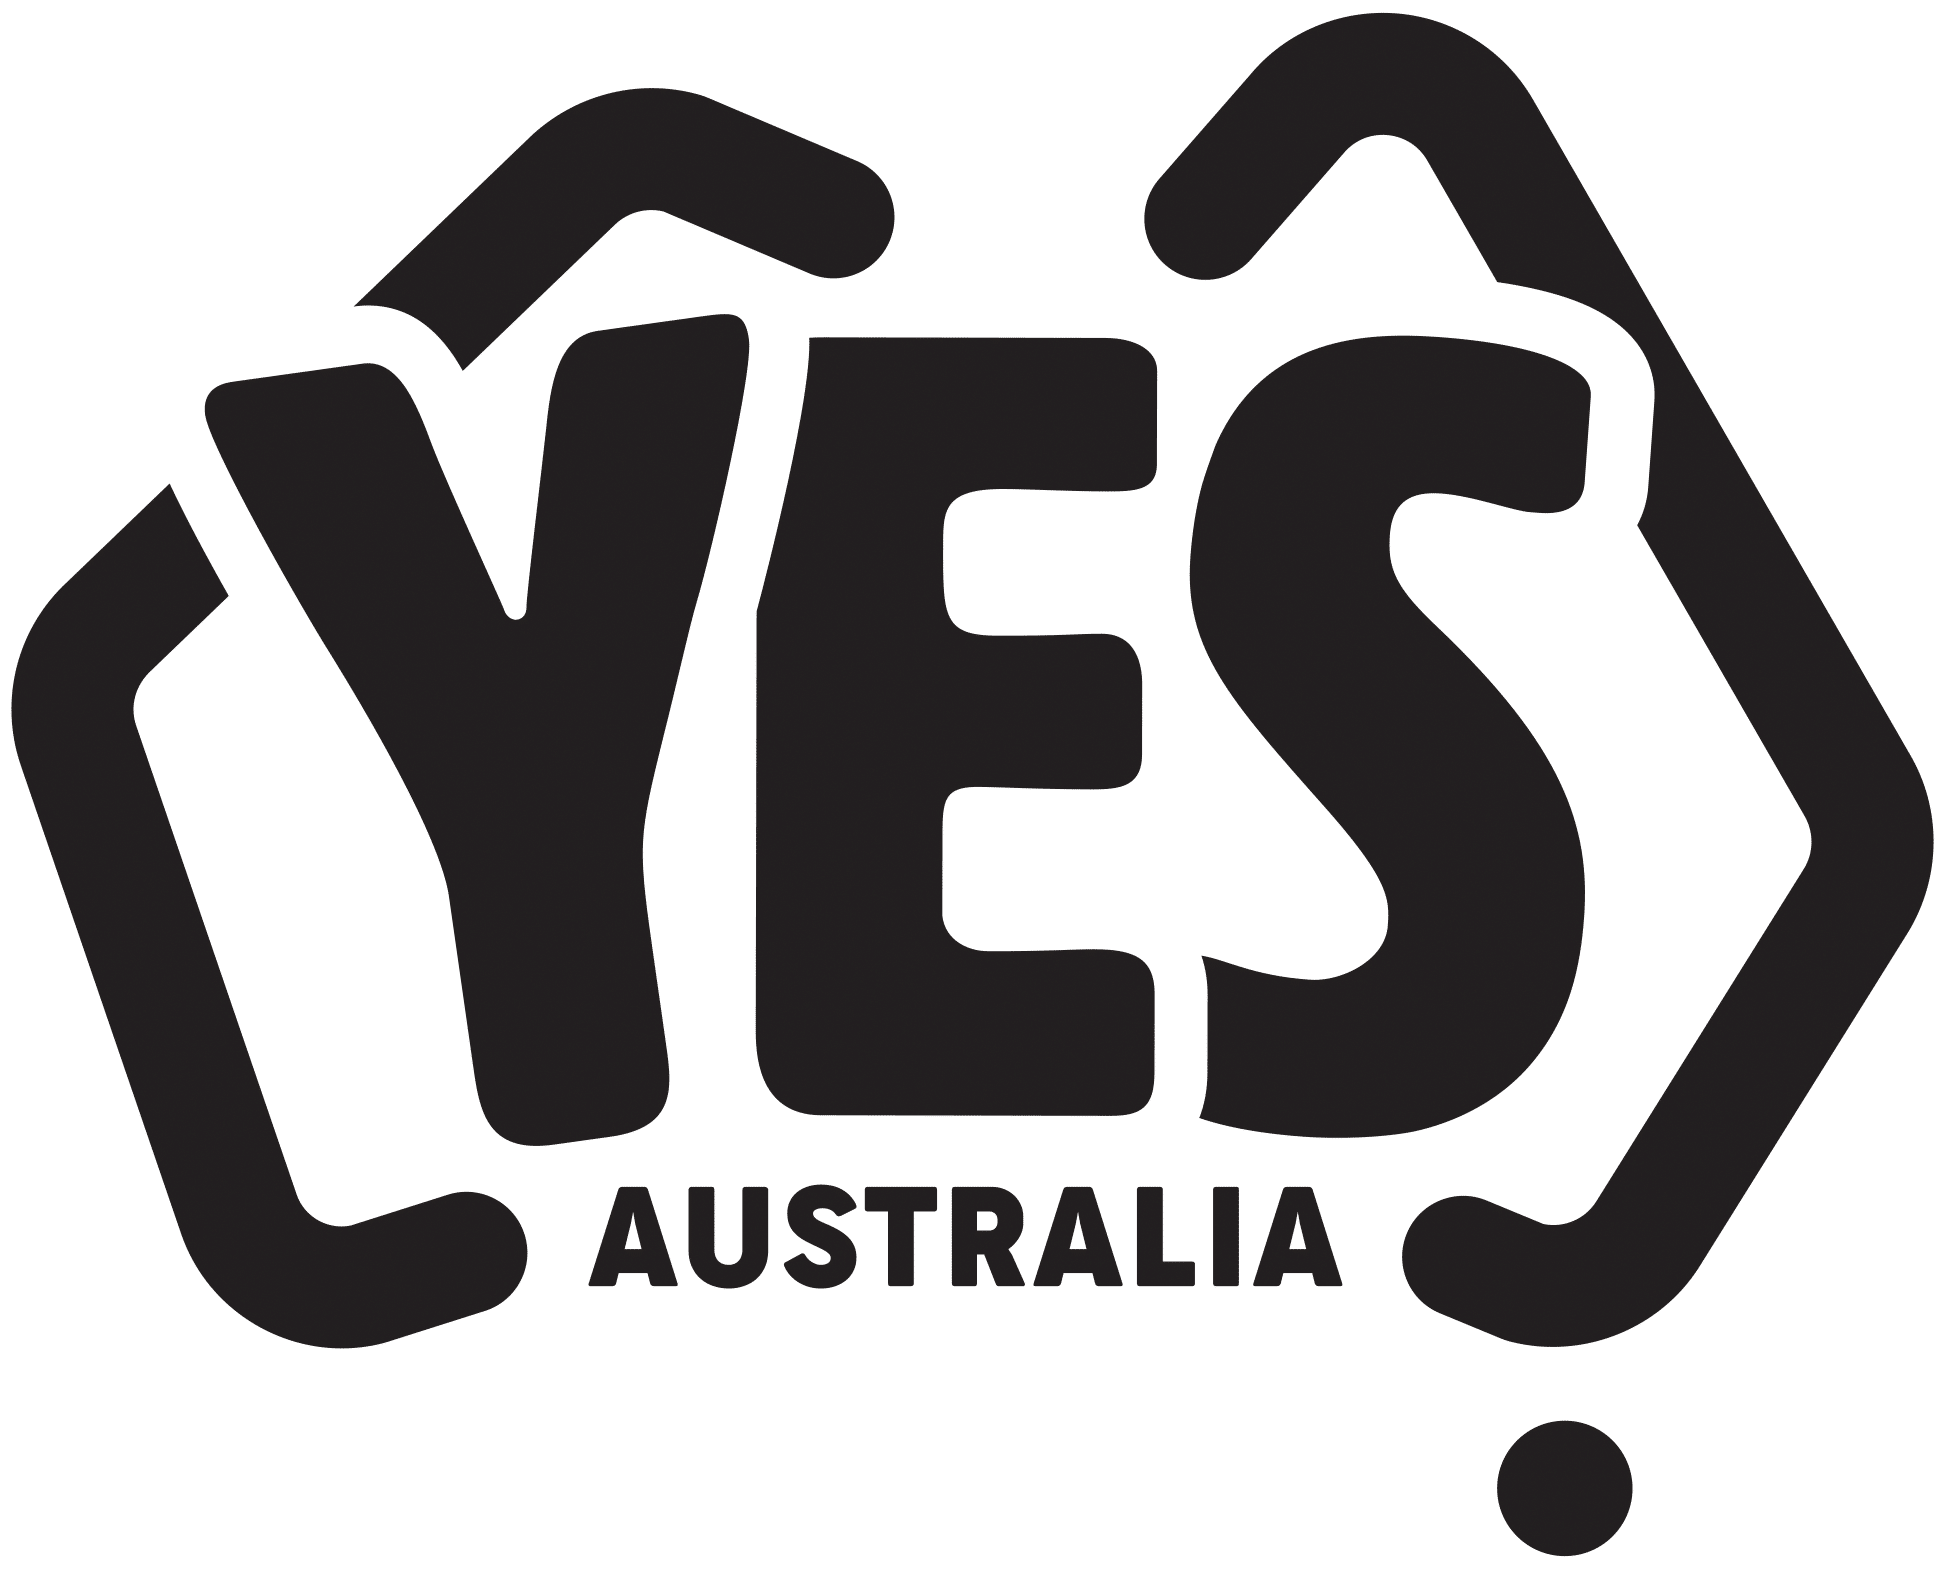 YES Australia Education - ICEF Academy